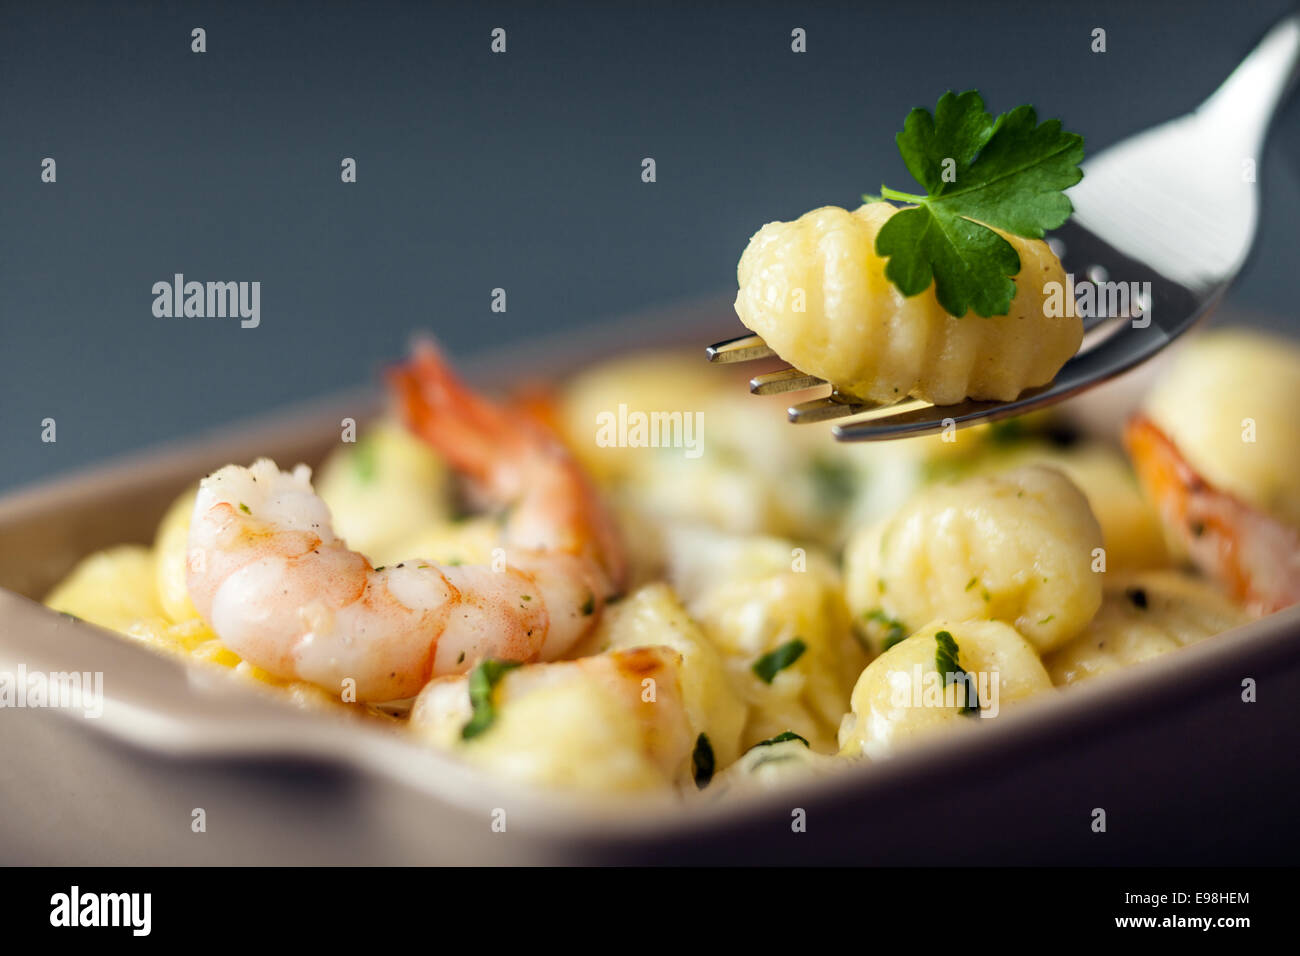 Des gnocchi italiens, ou des boulettes de pâte faite avec de la semoule, aux gambas ou crevettes pour une délicieuse cuisine de fruits de mer avec une boulette sur une fourchette avec selective focus Banque D'Images